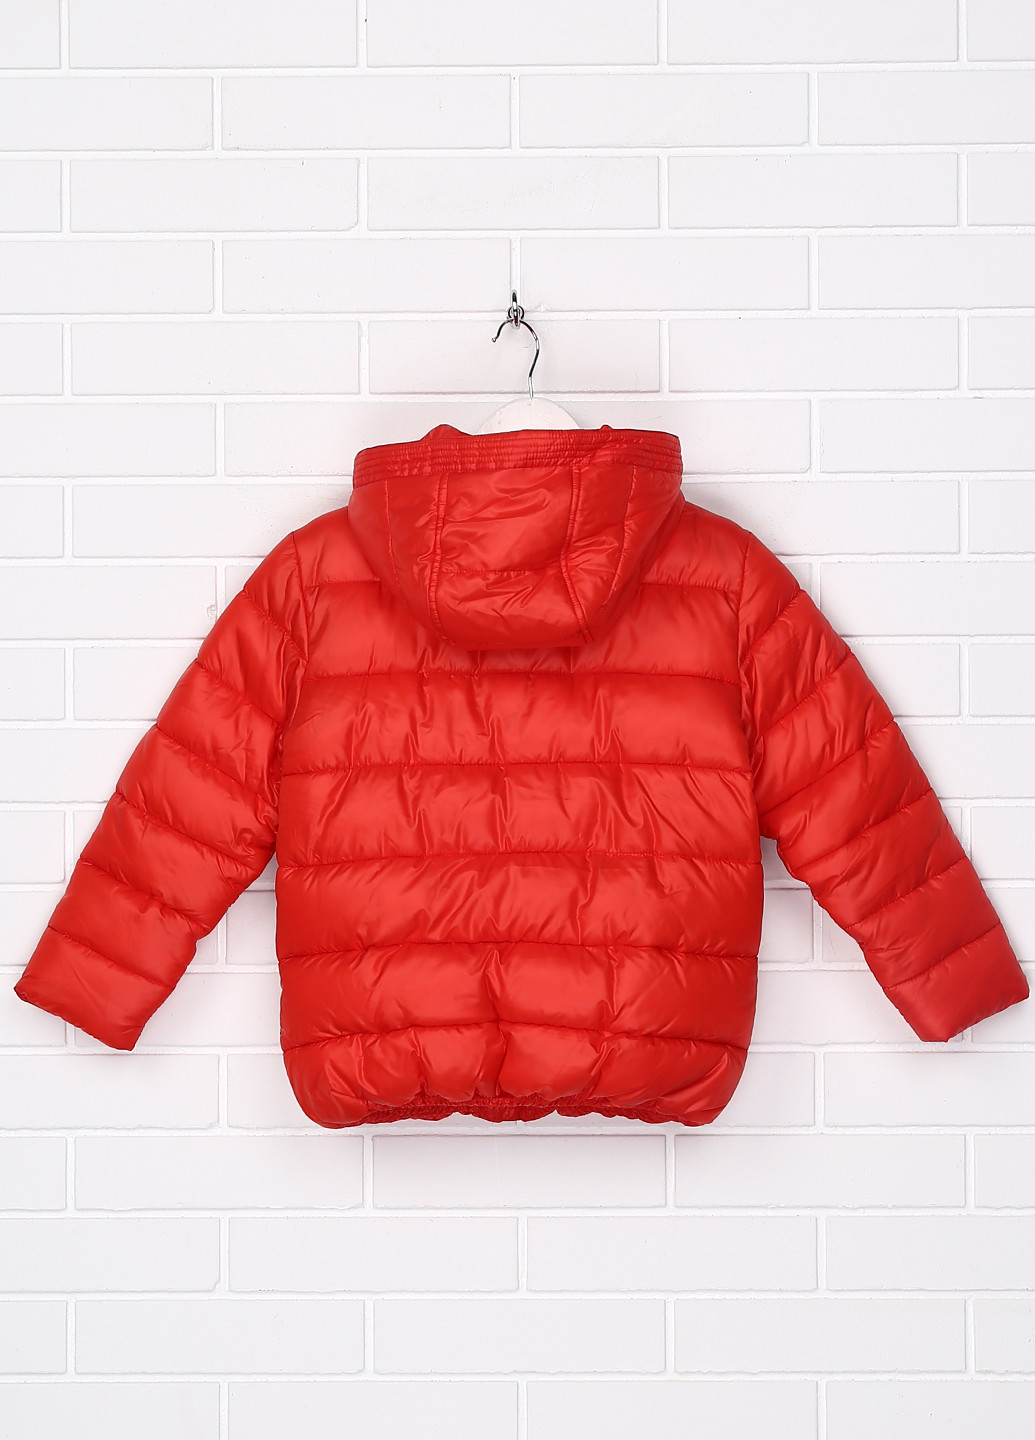 Красная зимняя куртка Mayoral